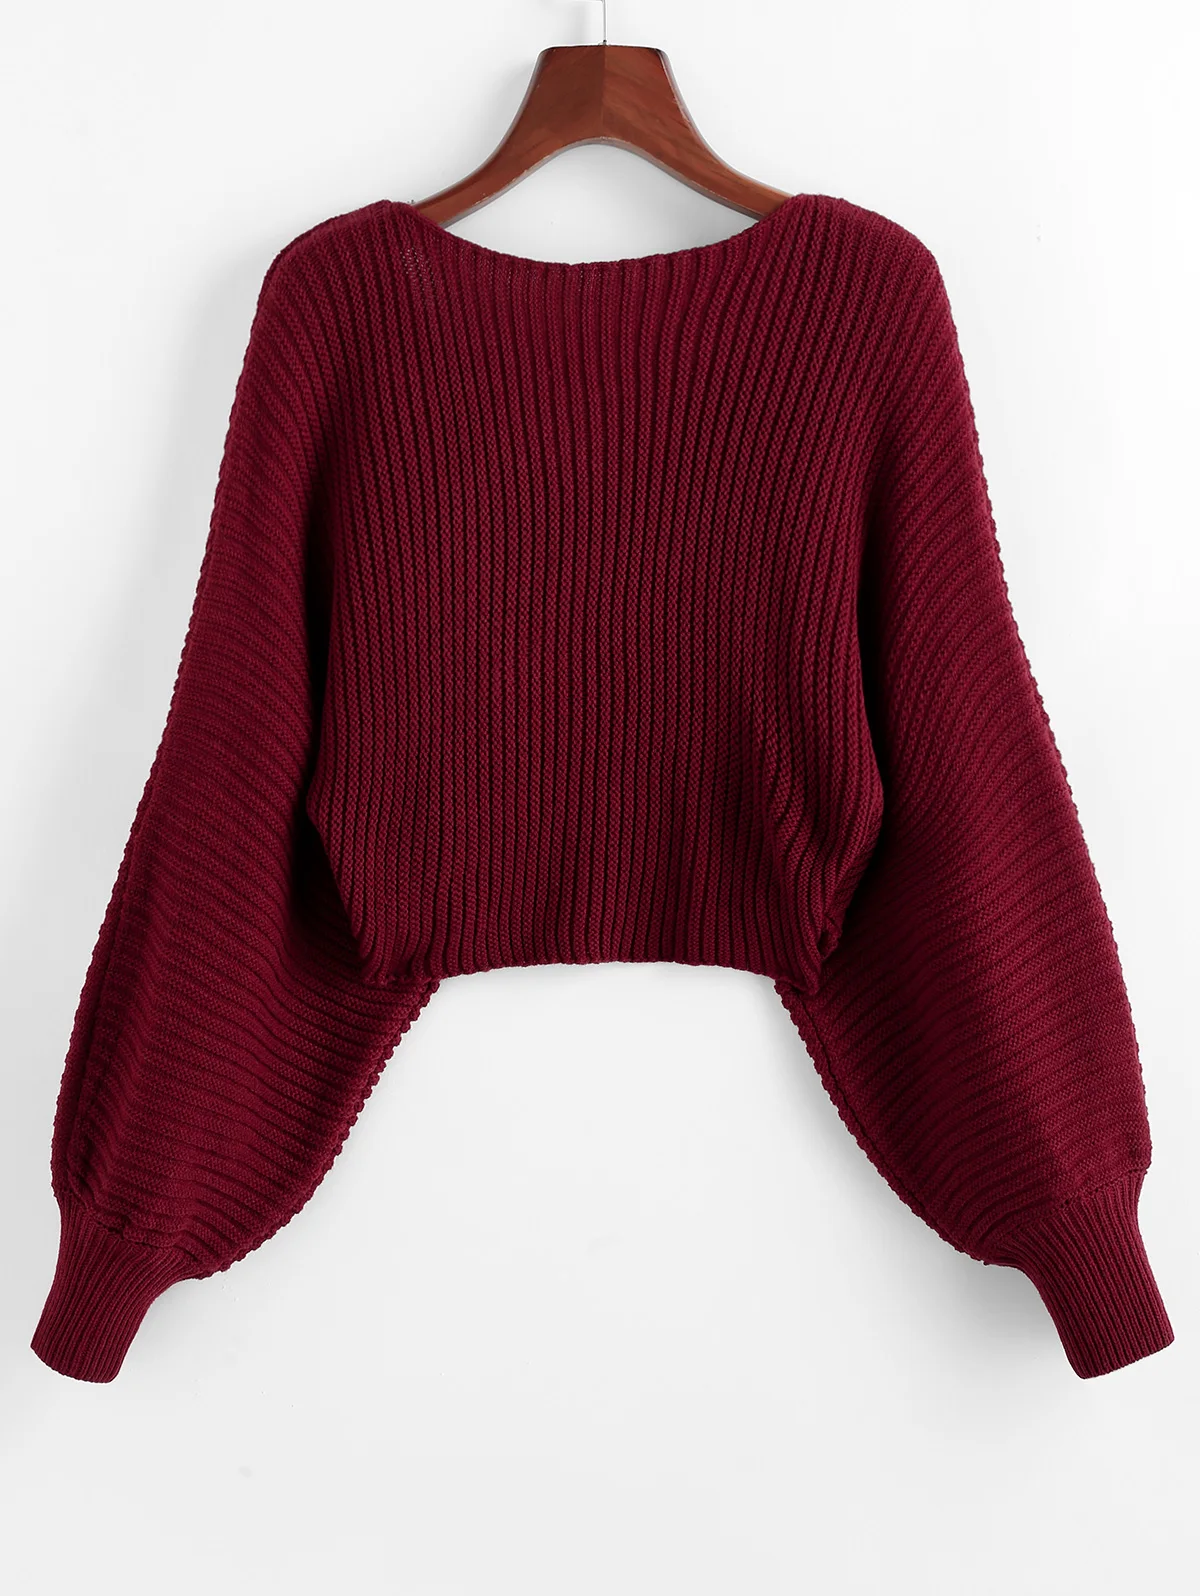 ZAFUL, крученый Асимметричный короткий свитер, Женский Теплый Однотонный пуловер, рукав летучая мышь, сексуальный свитер,, Осень-зима, повседневный женский свитер